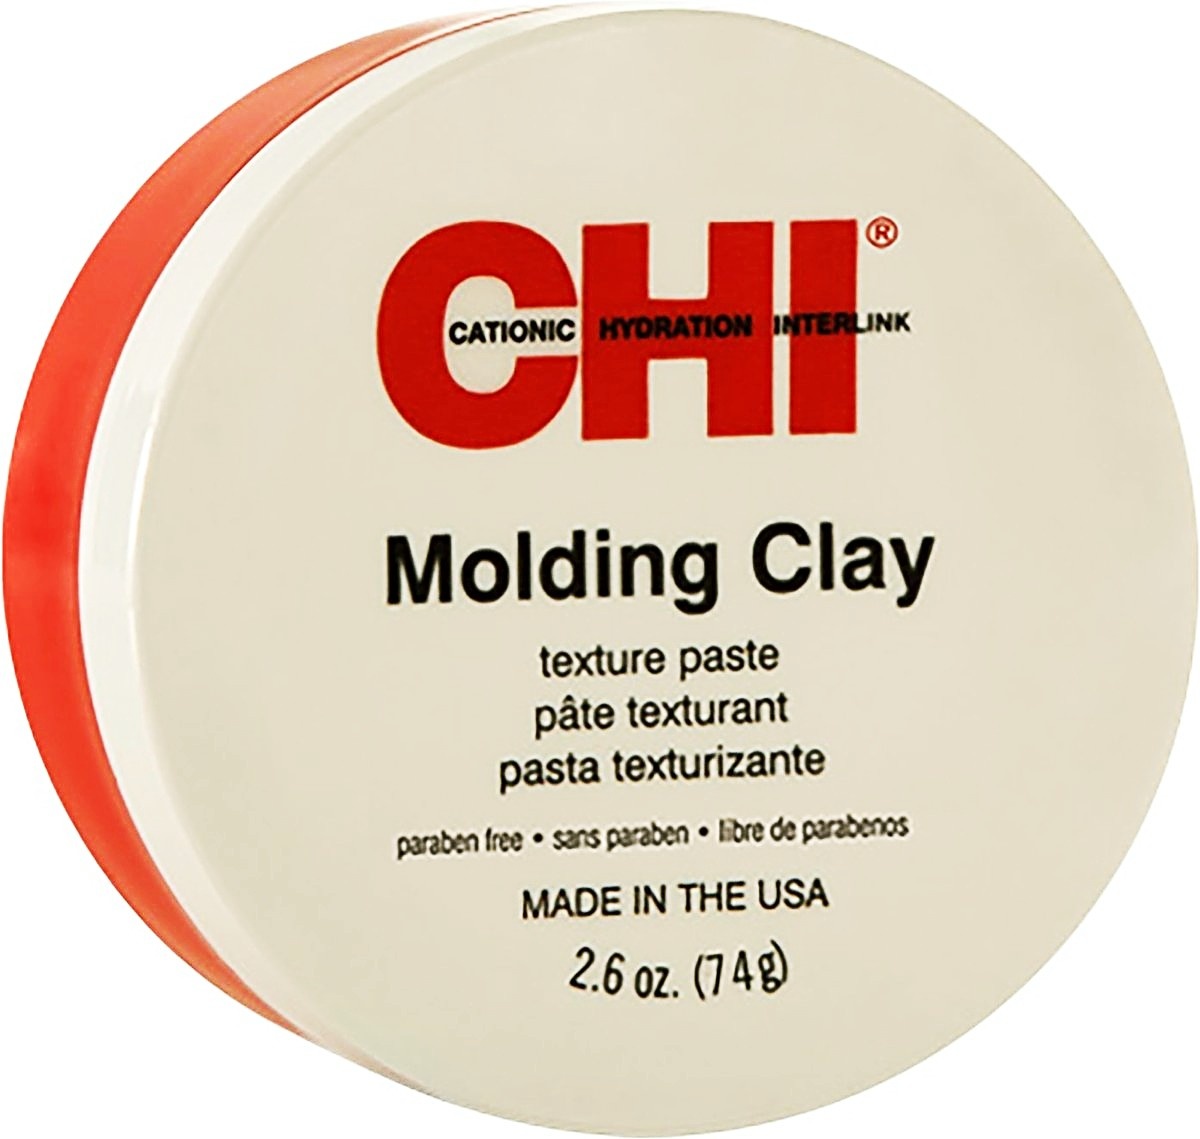 CHI Molding Paste 50g Haarpasta